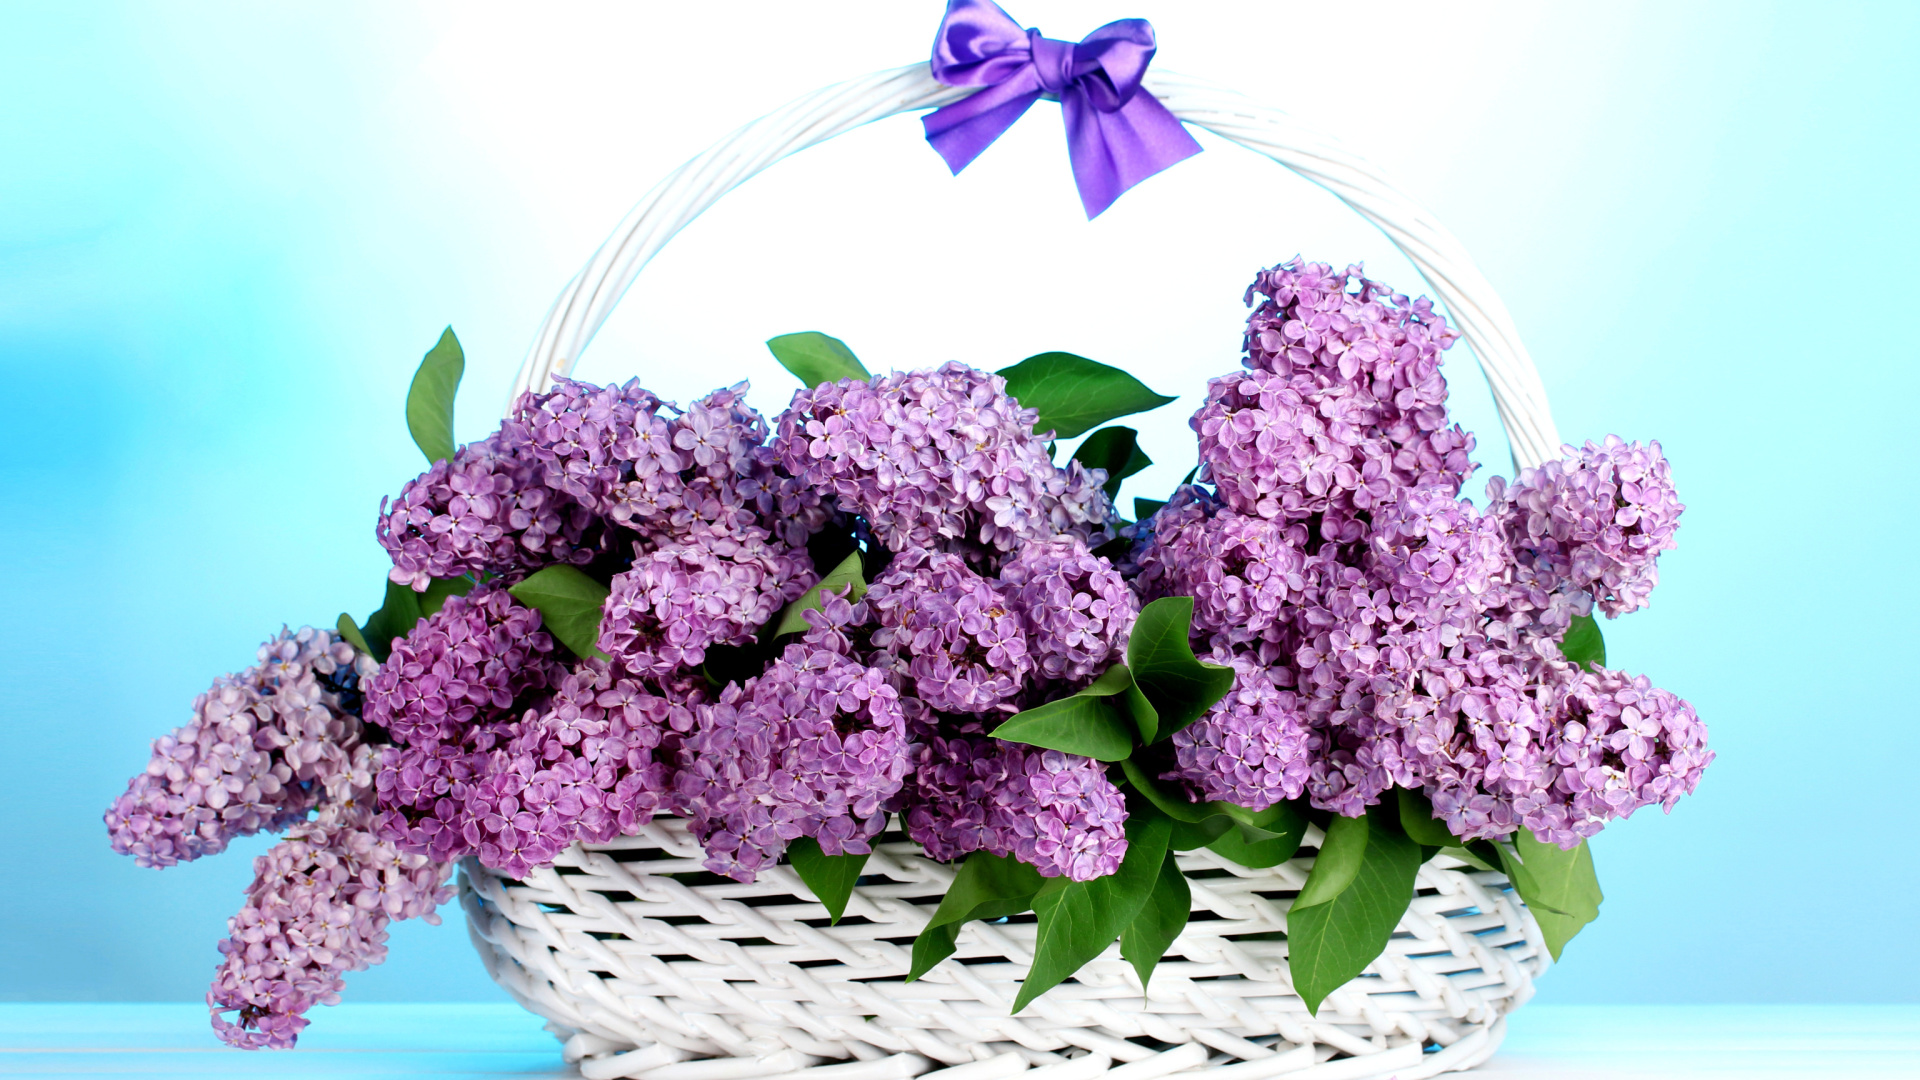 Sfondi Baskets with lilac flowers 1920x1080